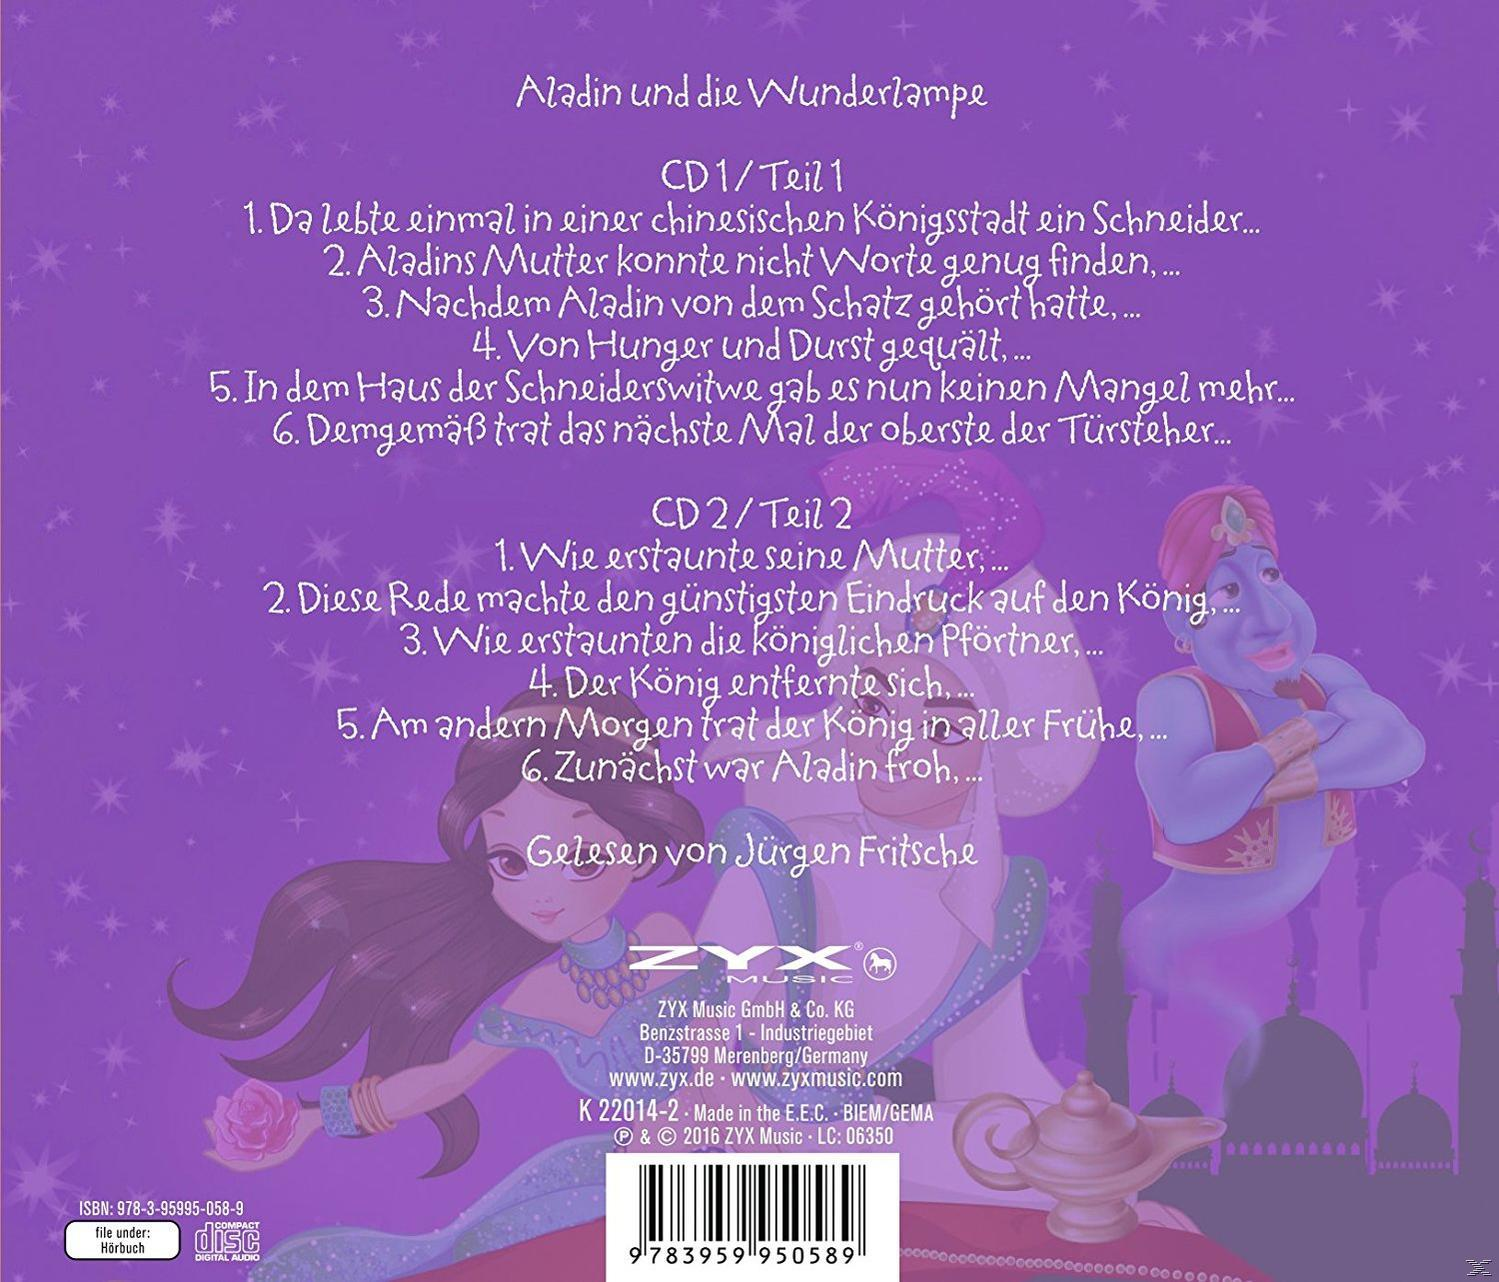 Aus Und Nacht 1001 Märchen - Die (CD) - Wunderlampe Aladin